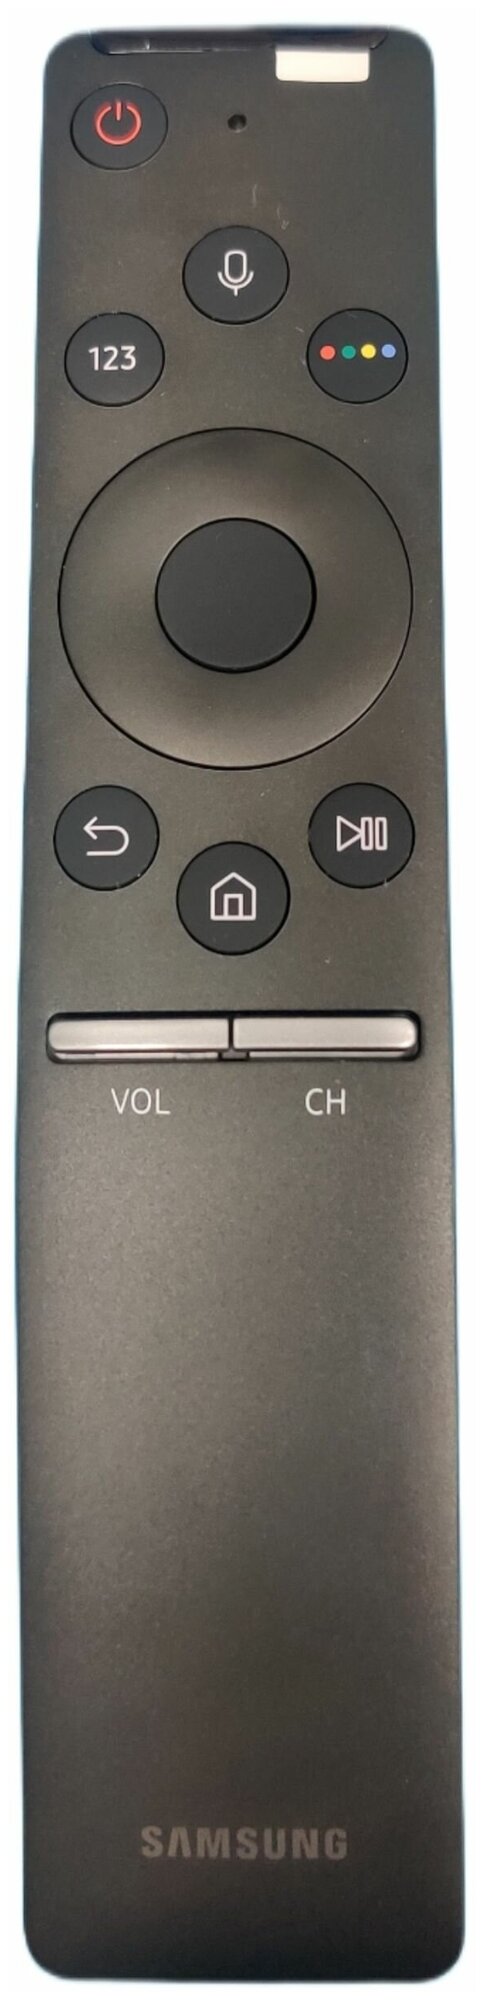 Пульт Samsung BN59-01298D (BN59-01274A BN59-01266A) orig. Smart Control с голосовым управлением (микрофоном)